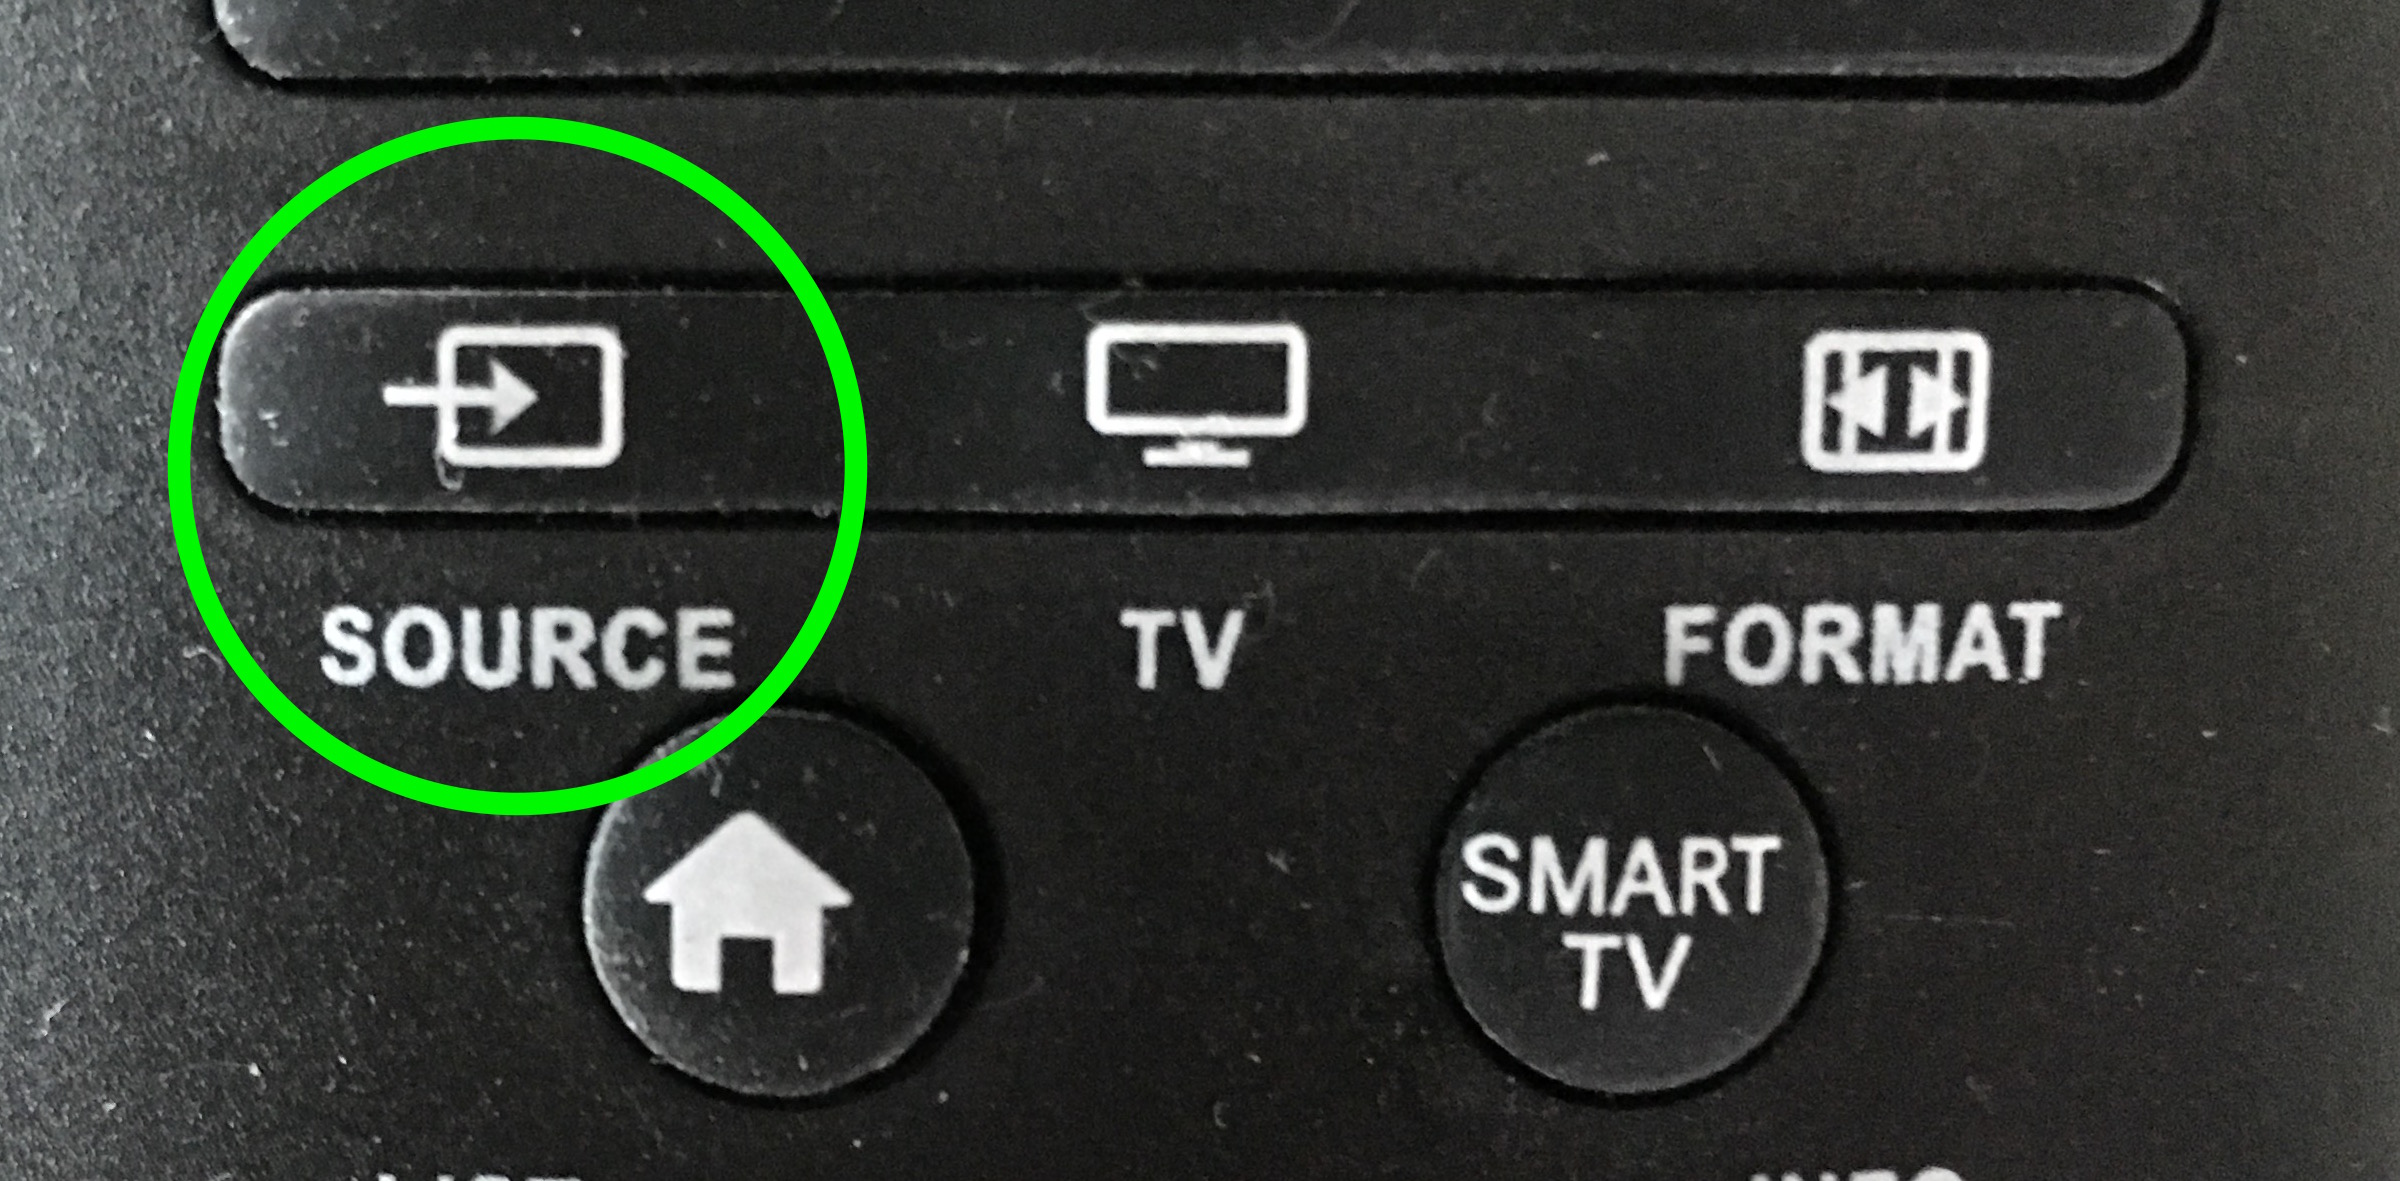 Кнопка соурс. Кнопка input. Кнопка source. Sony кнопка source. Button on Remote.